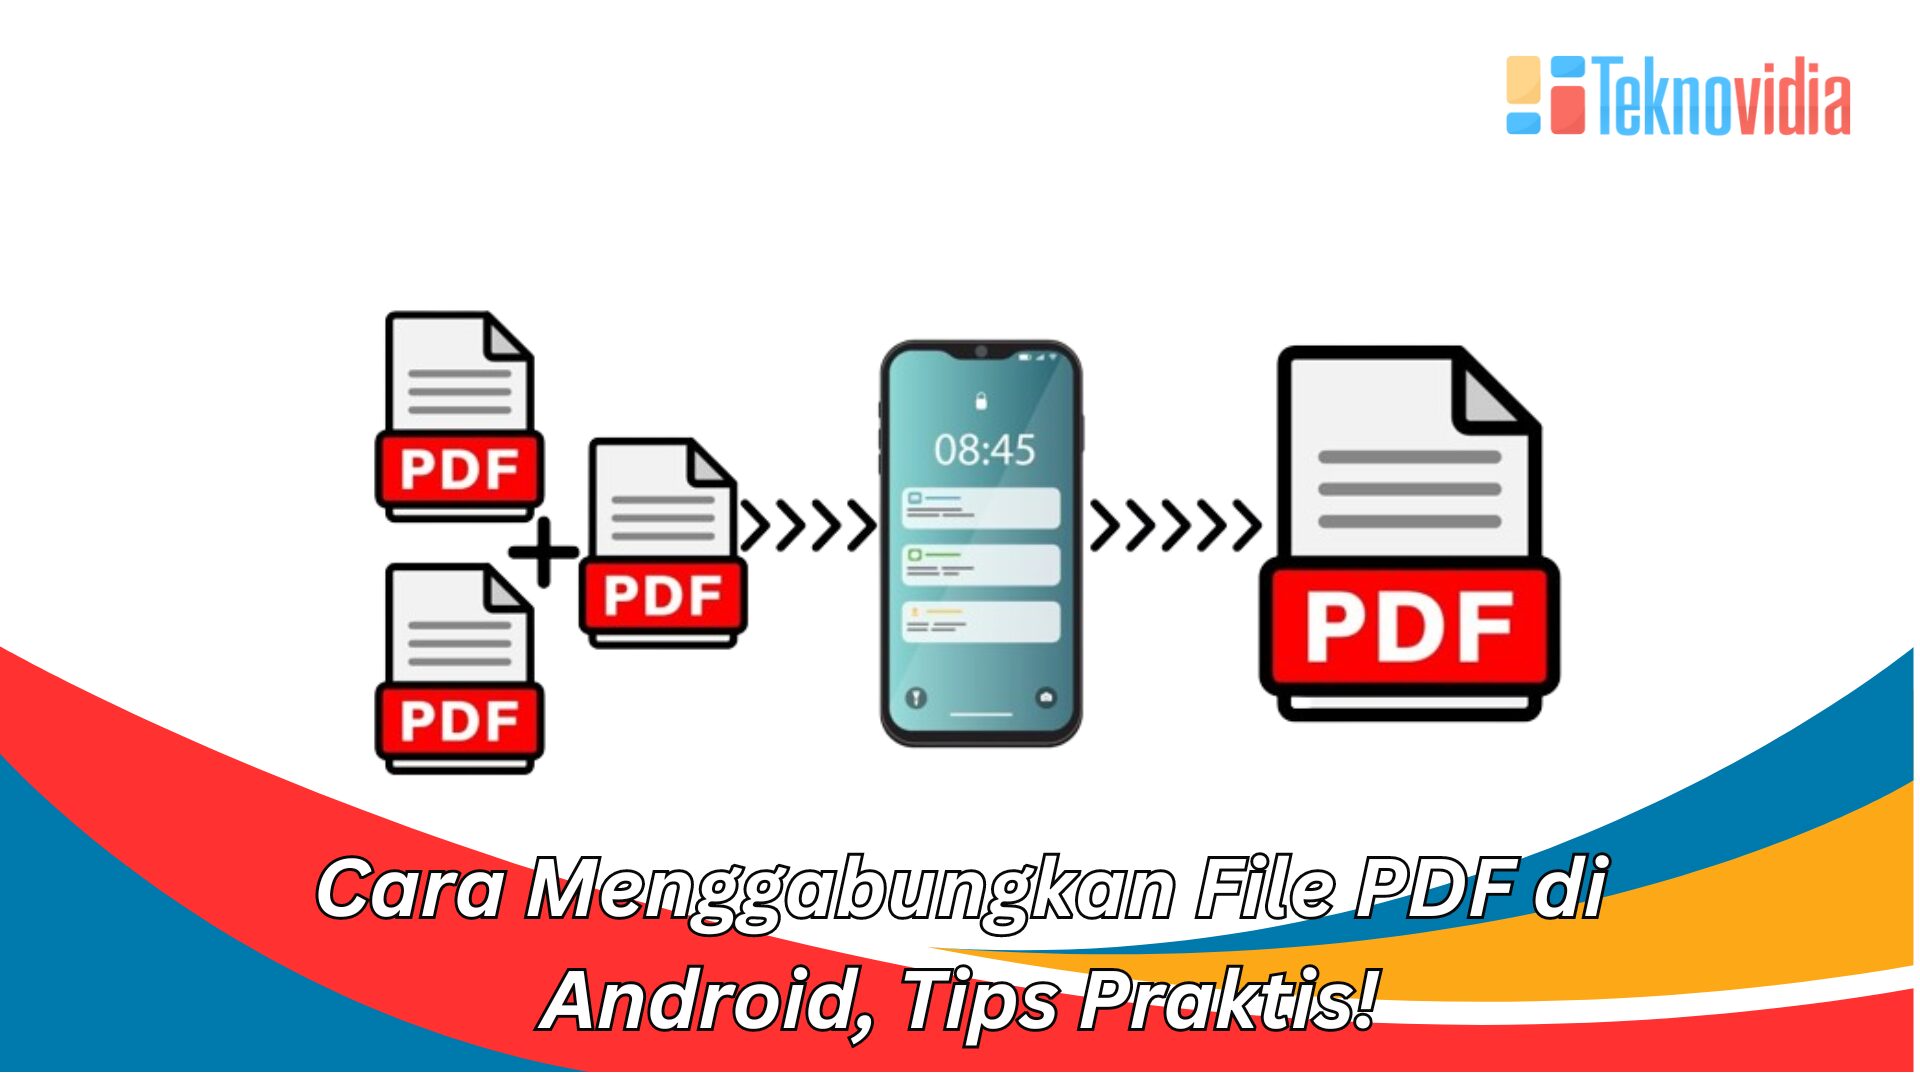 Cara Menggabungkan File PDF di Android, Tips Praktis!